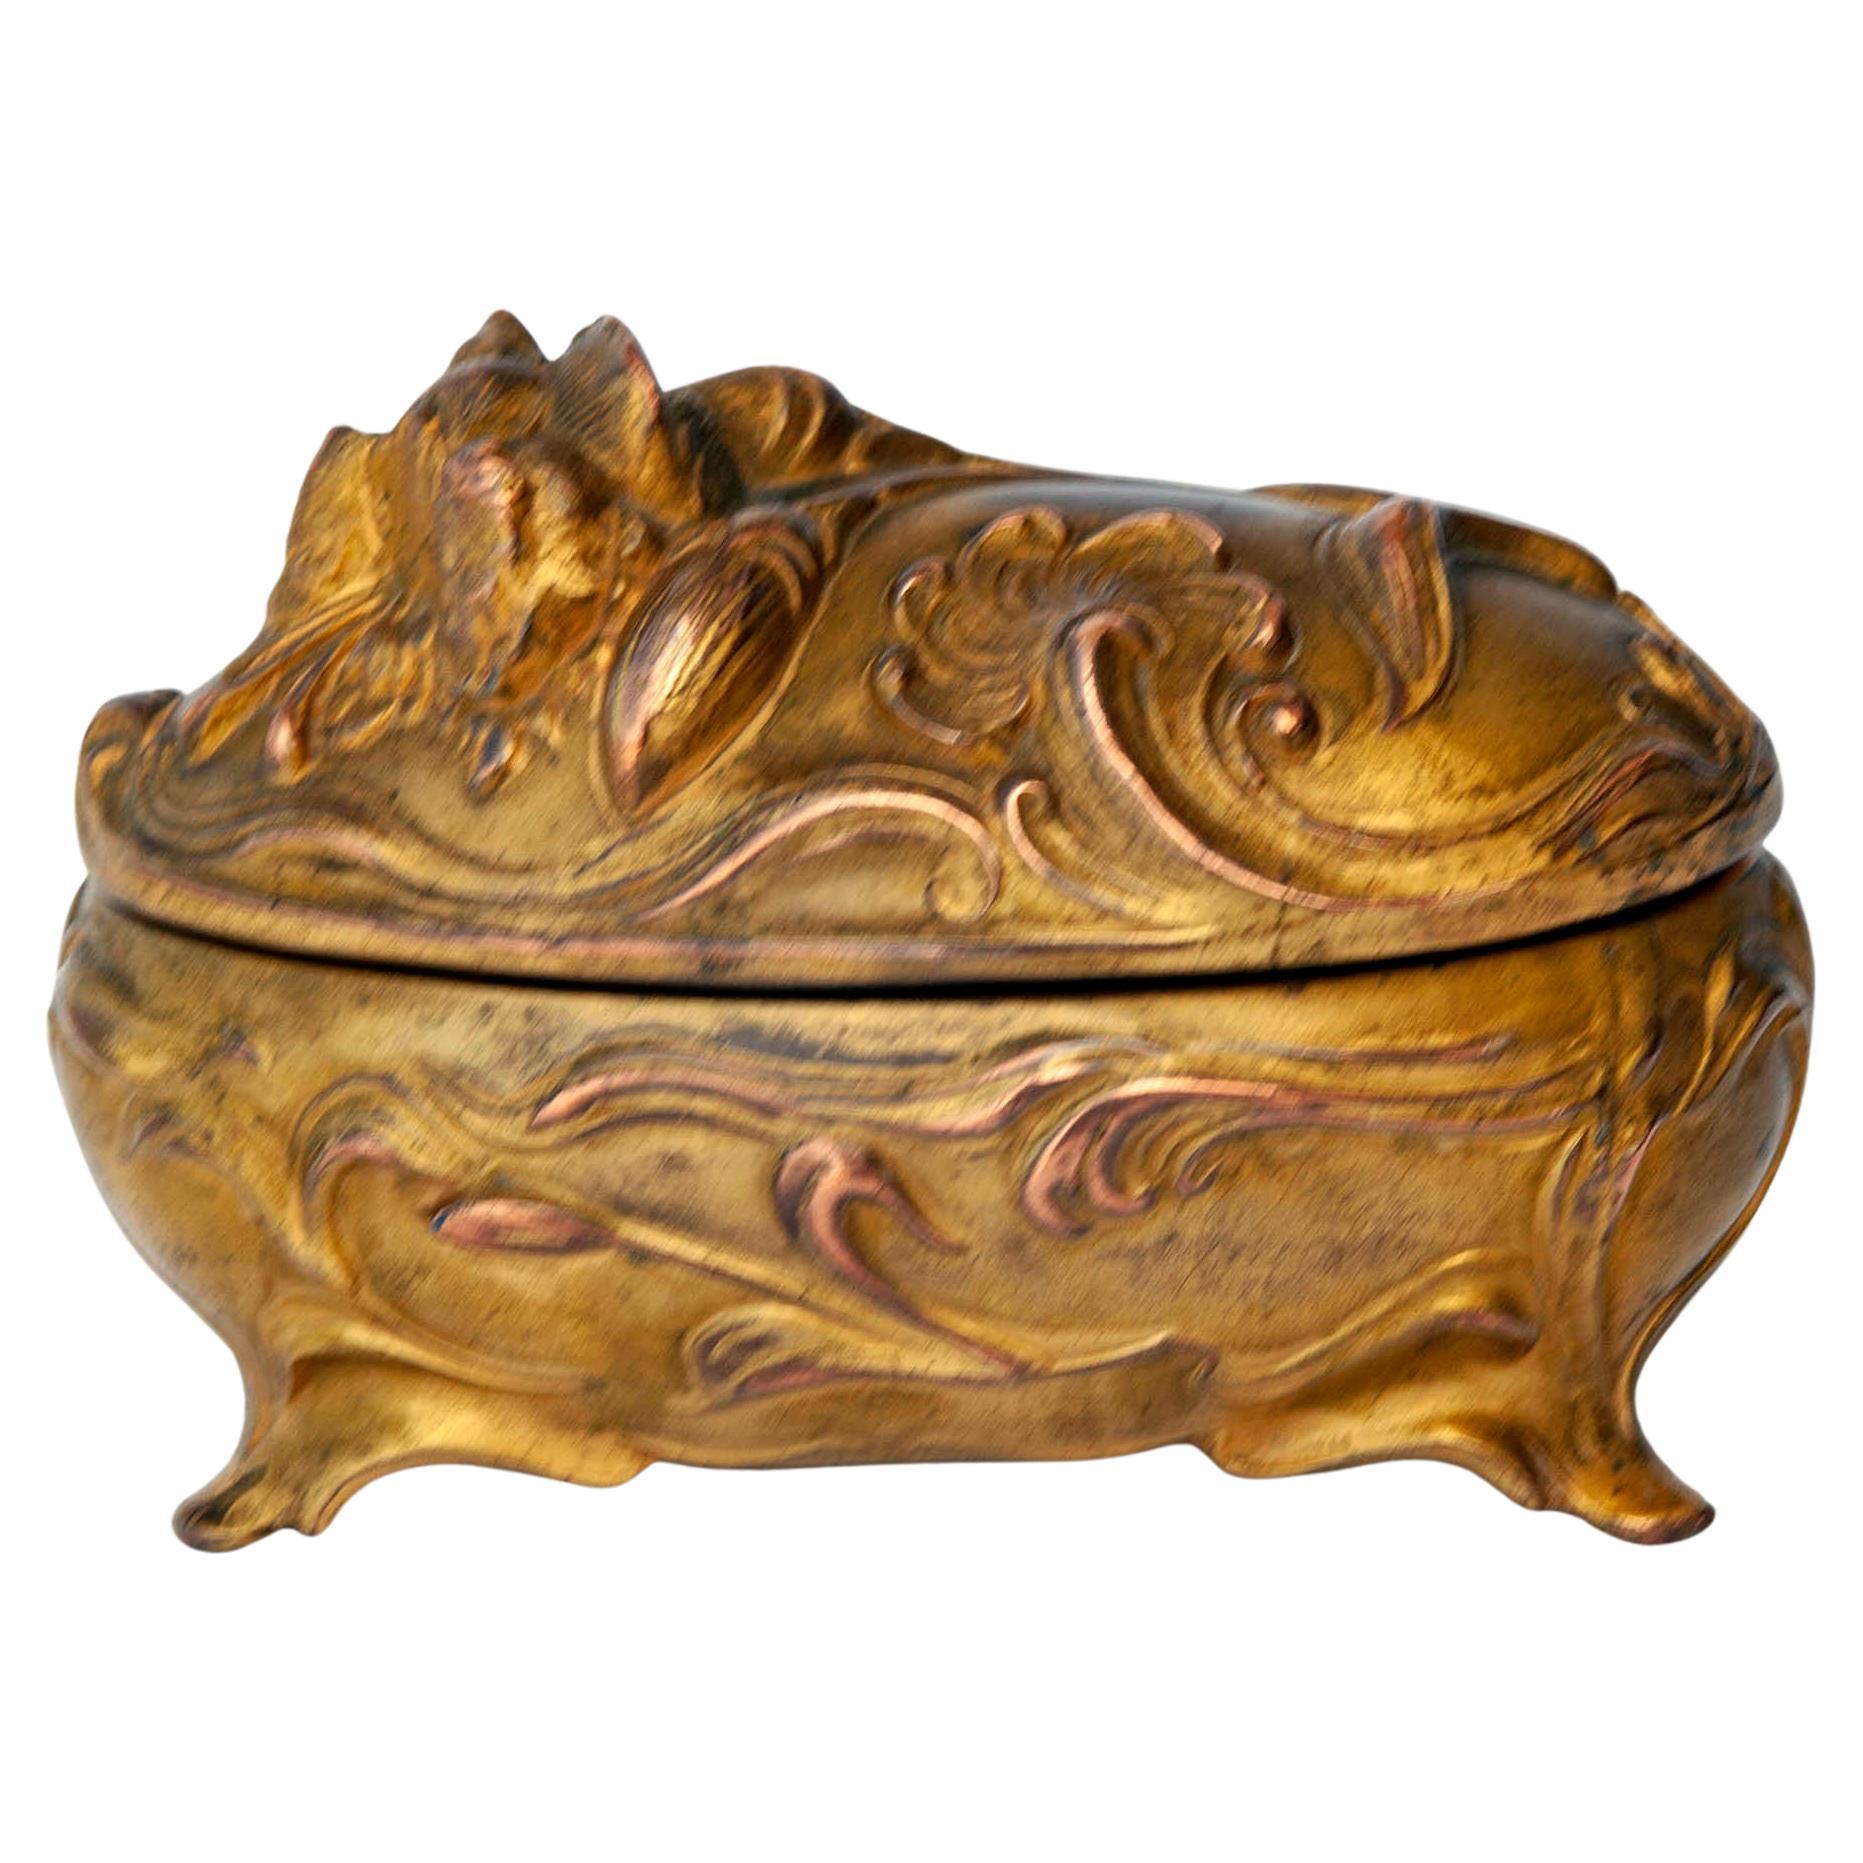 Boîte à bijoux Art Nouveau en bronze doré avec feuillage, l'intérieur n'est pas doublé 
Parfait pour le chevet du lit pour jeter des bijoux/ bagues avant de se coucher. 
La boîte est en très bon état d'ancienneté, avec une usure de la dorure due à